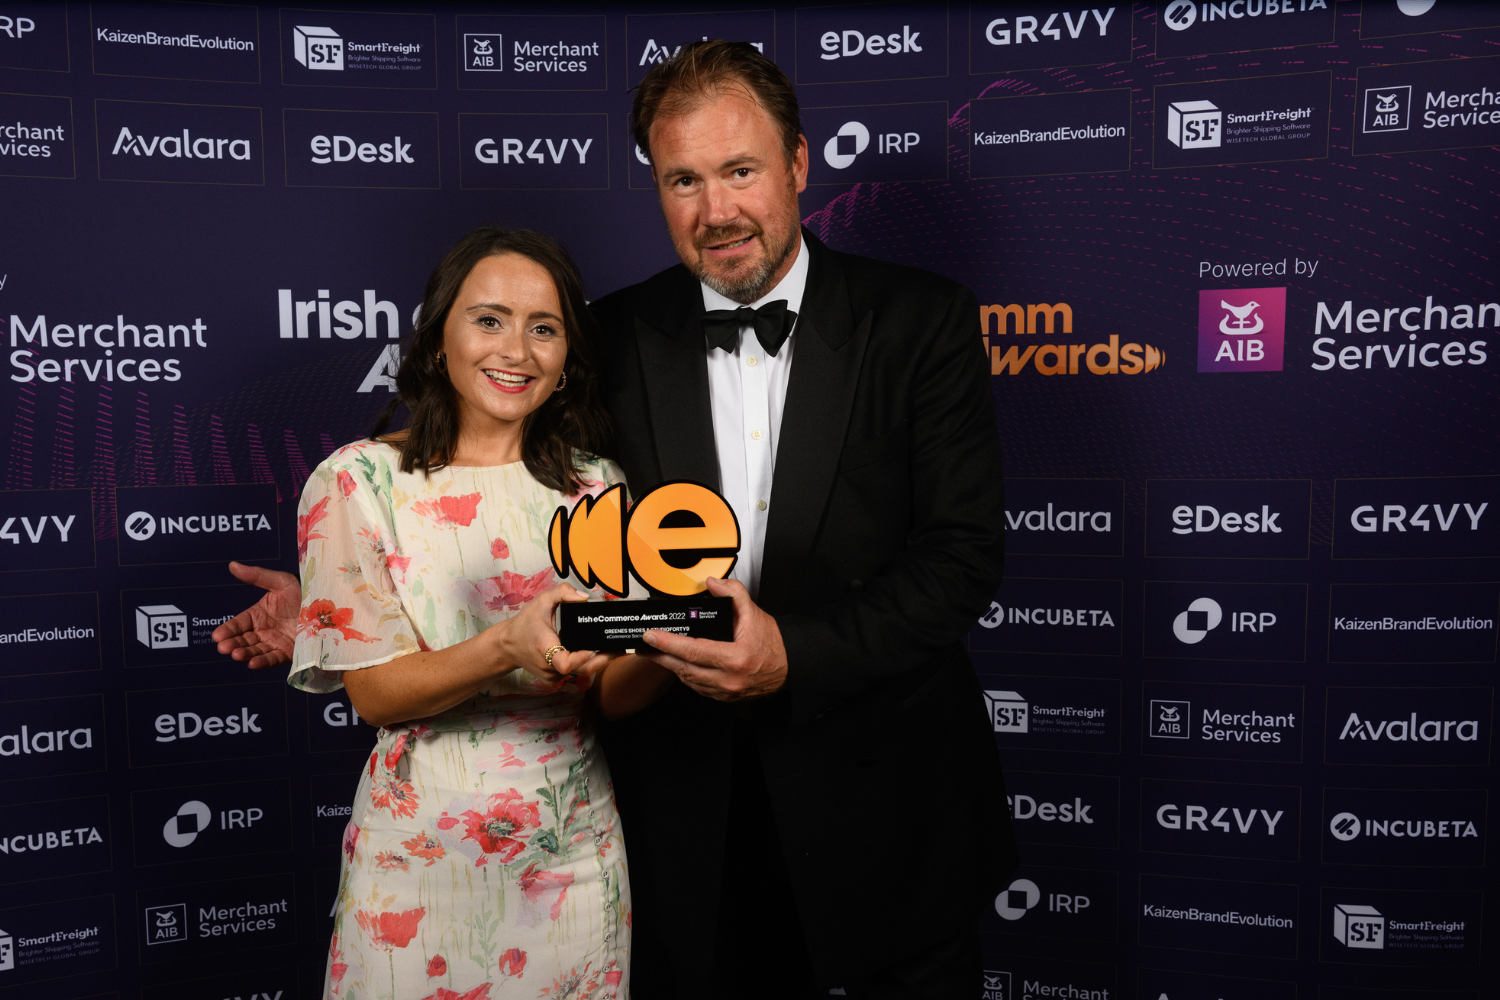 Irish eCommerce Awards